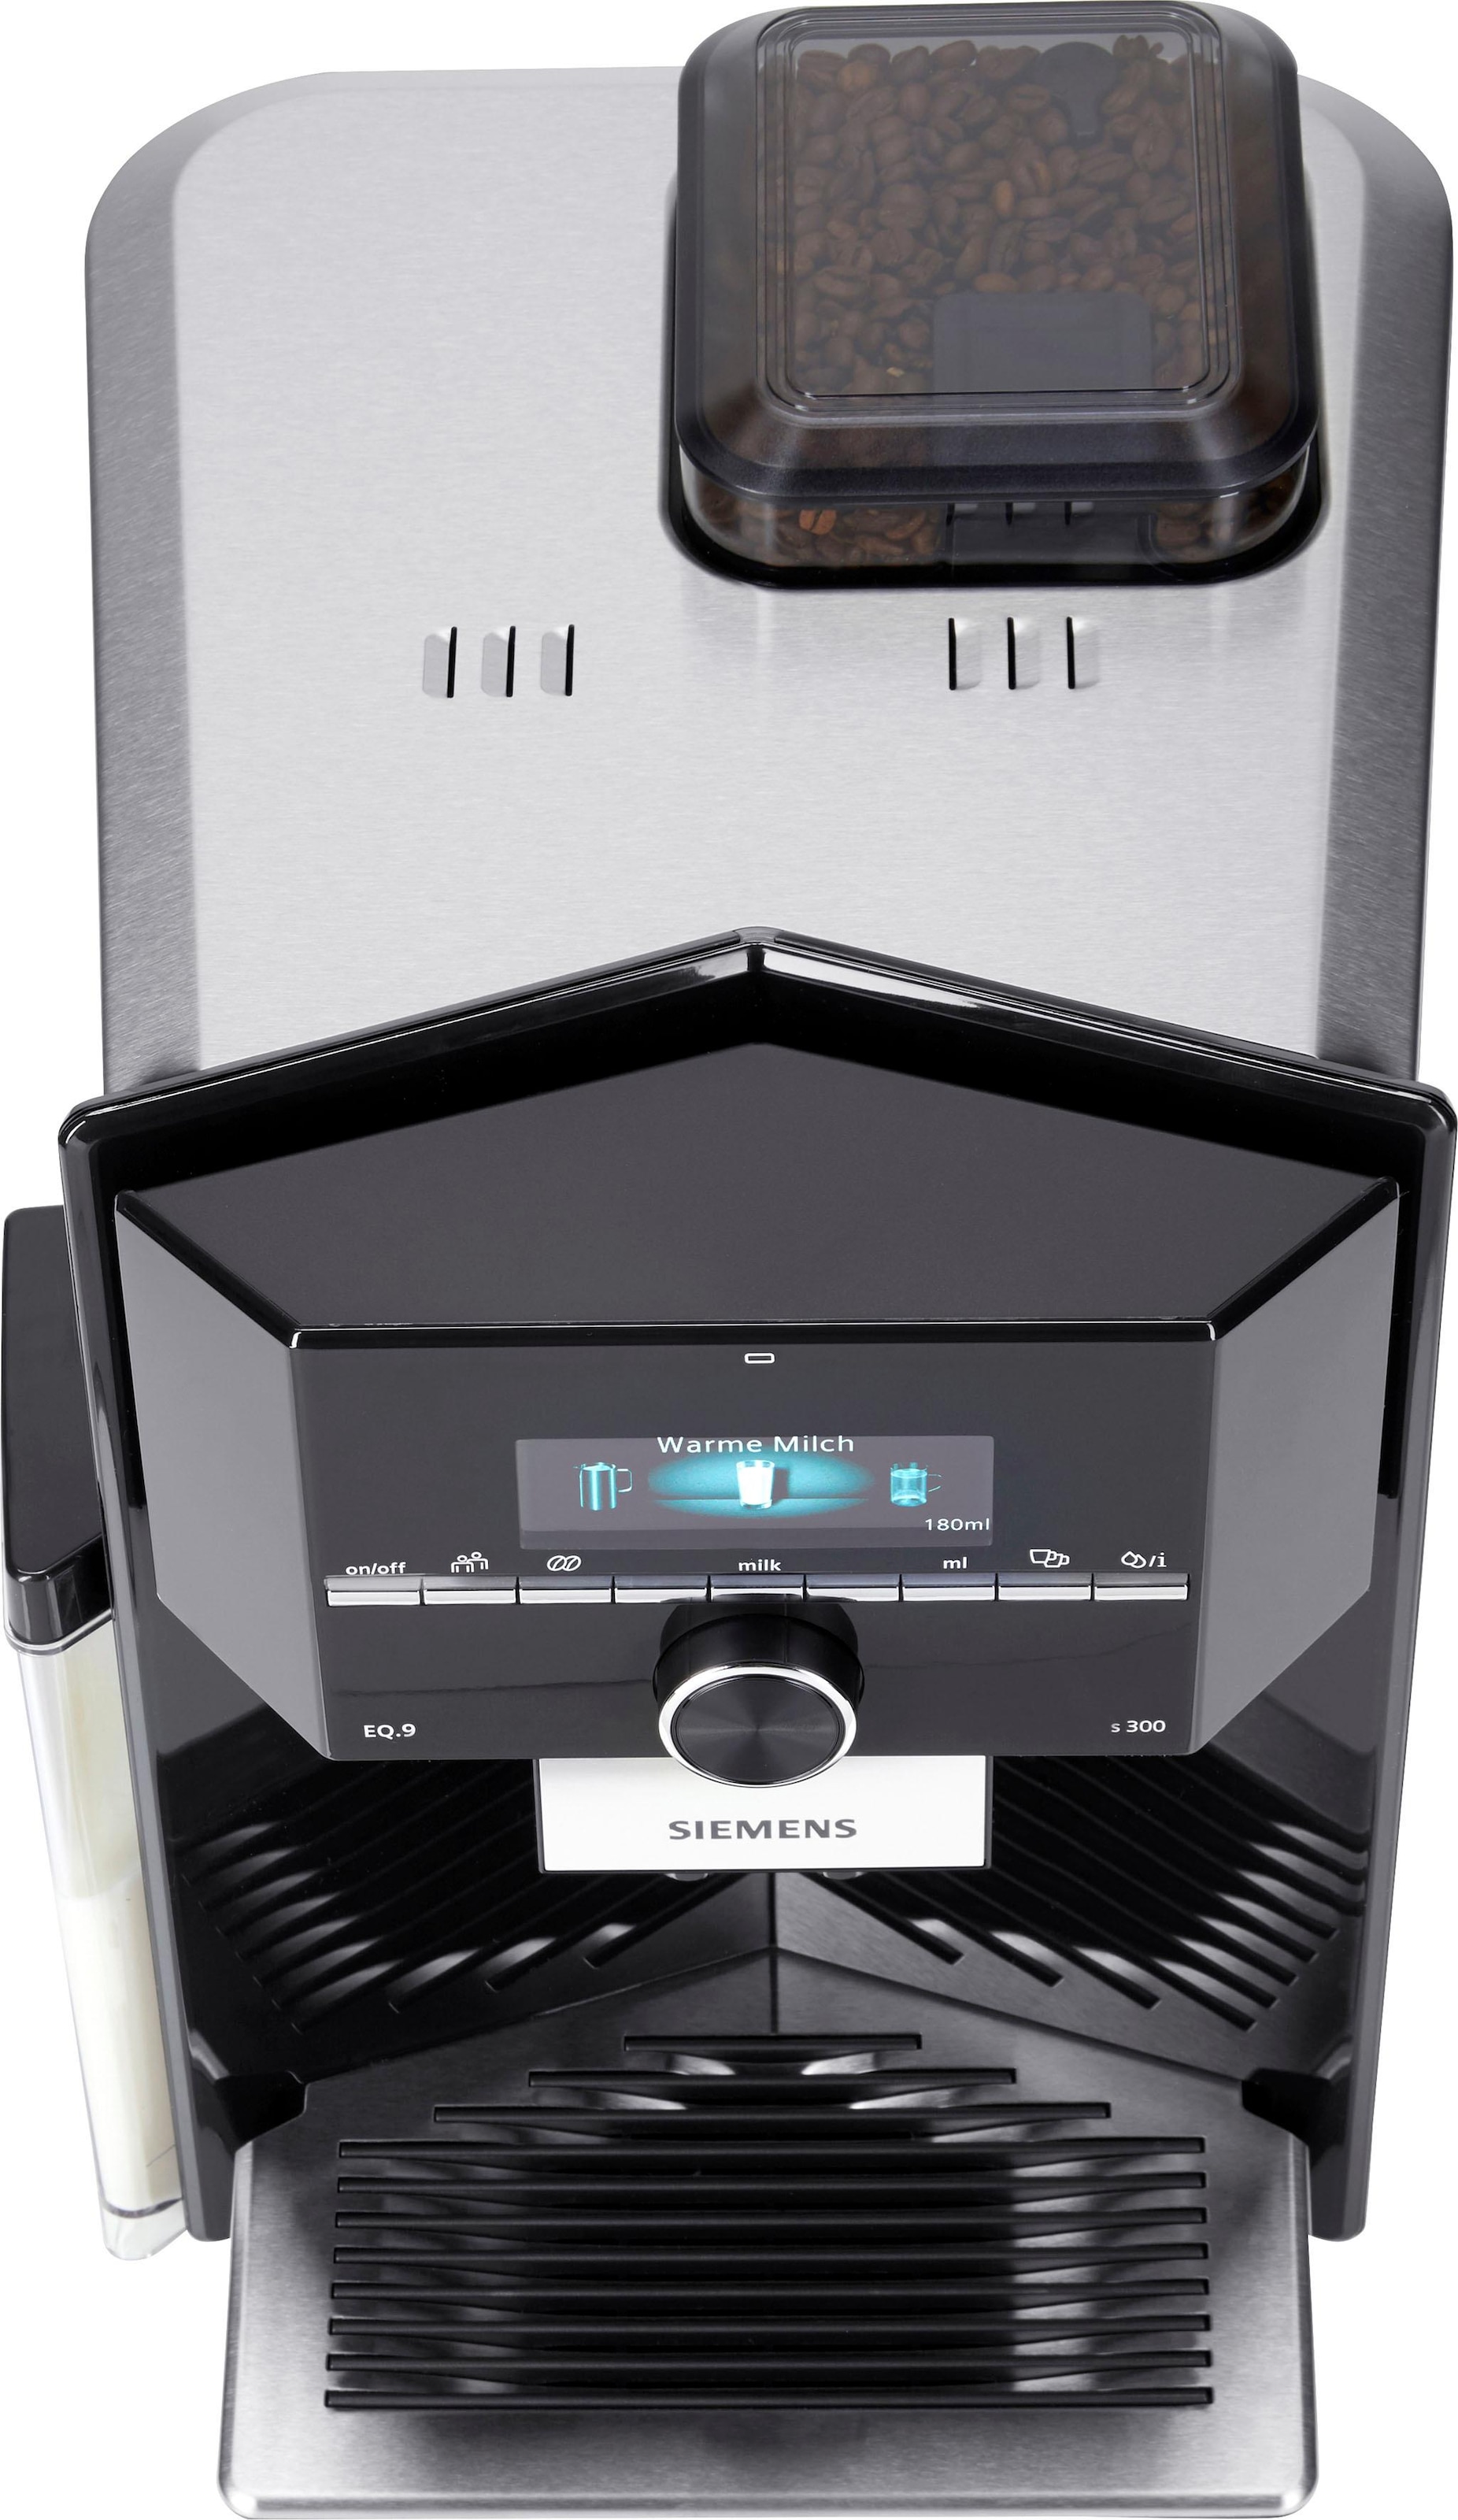 SIEMENS Kaffeevollautomat EQ.9 s300 TI923509DE, Raten kaufen 2,3l Scheibenmahlwerk auf Tank